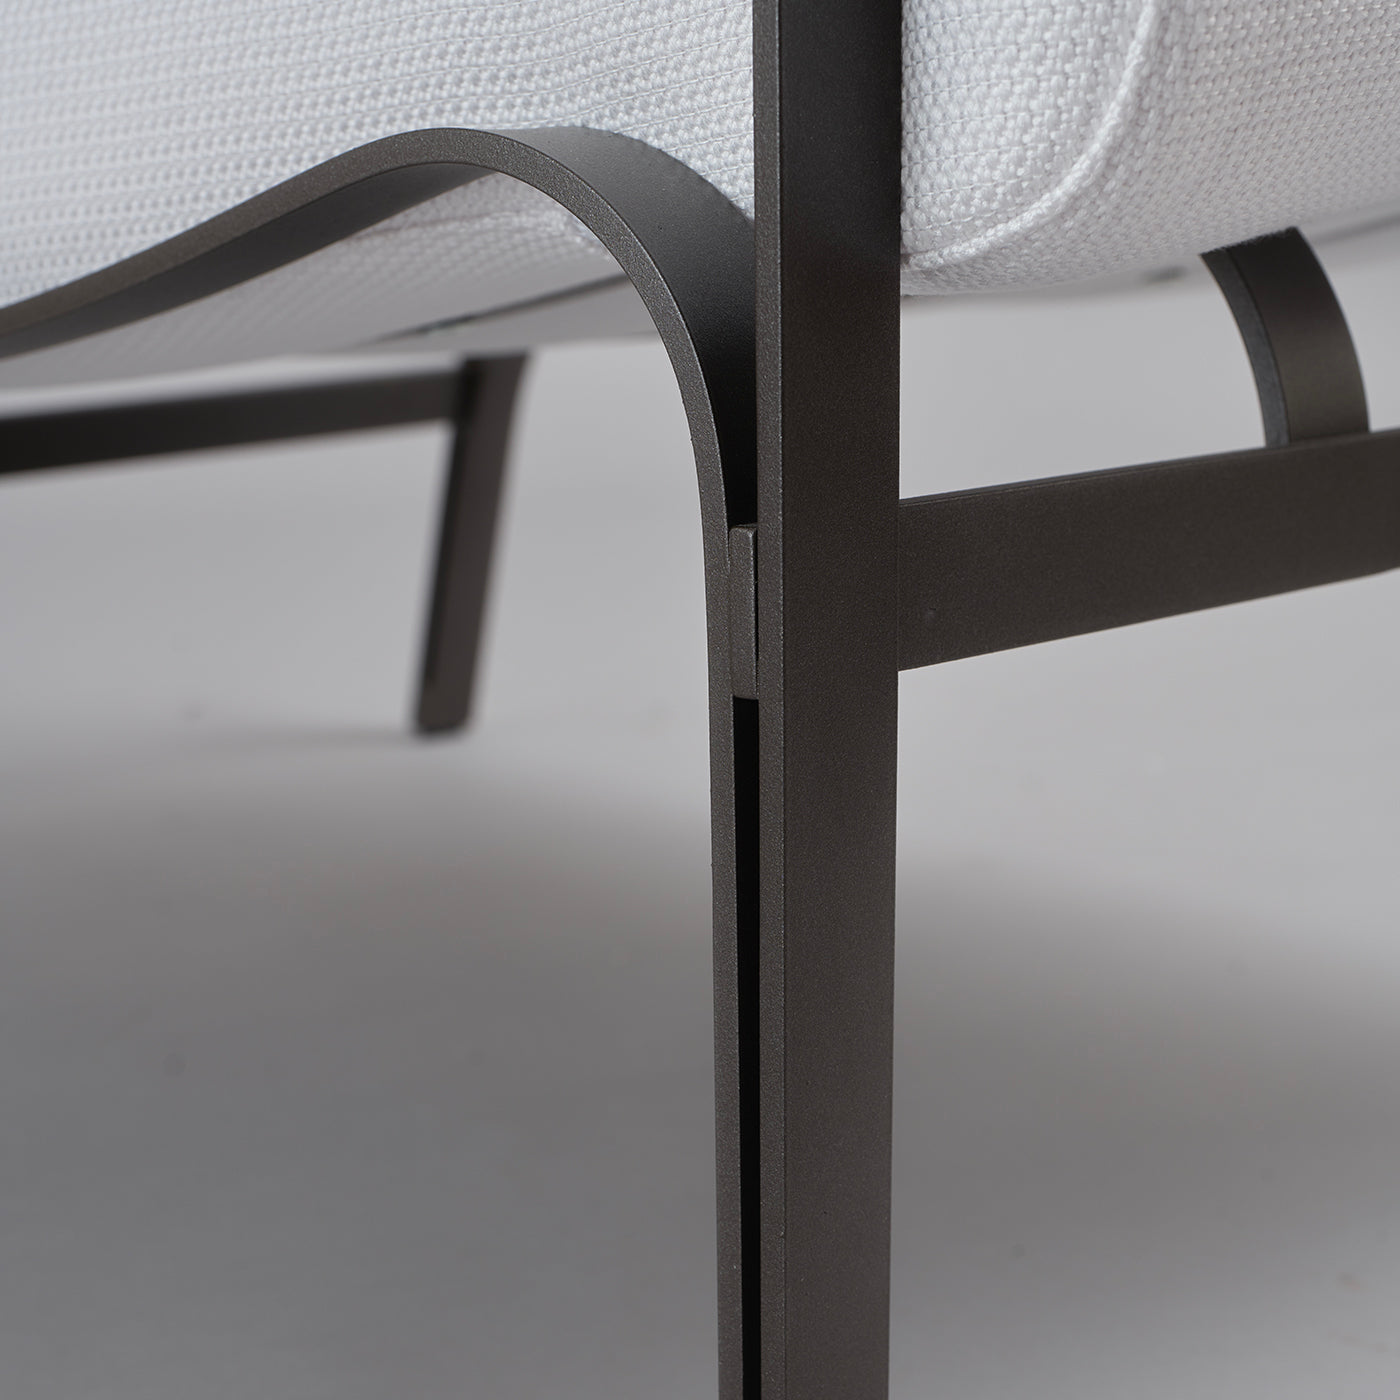 Chaise longue Amalfi blanca y gris de Studio 63 en acero inoxidable - Vista alternativa 1